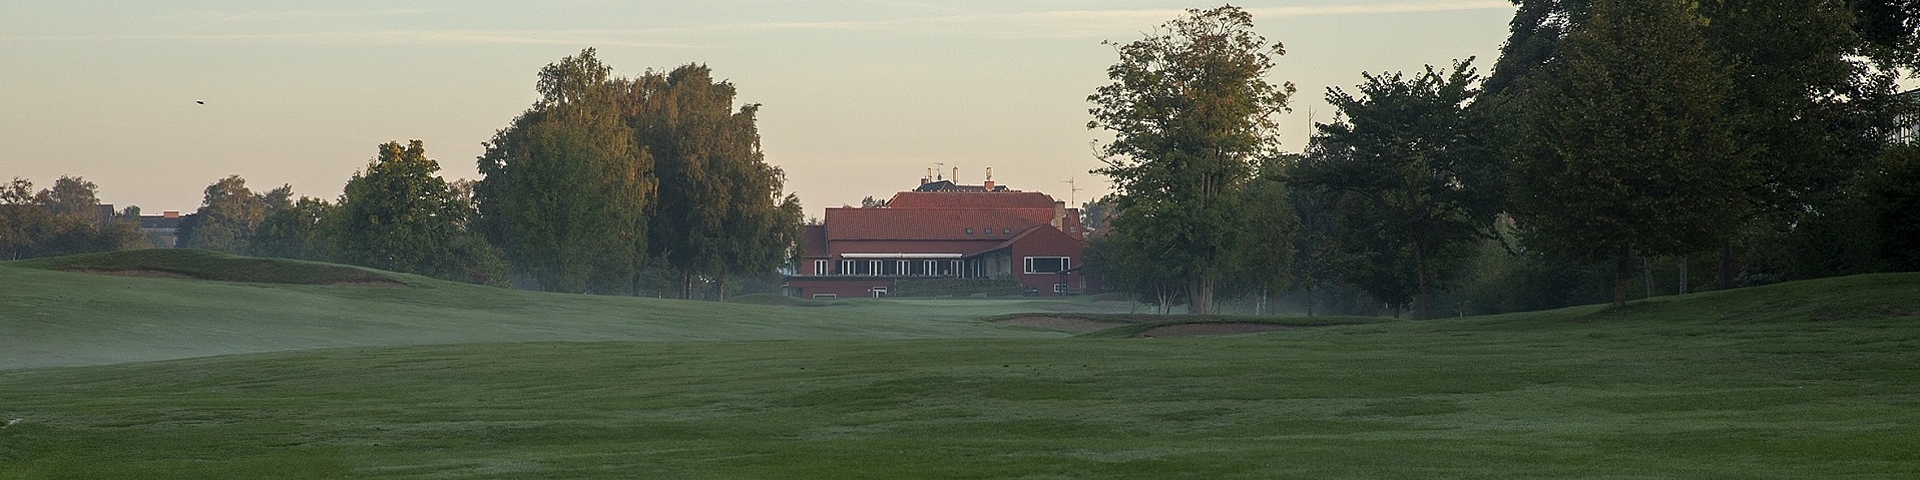 værdig orange leje Rungsted Golf Klub | Golfbana norra Själland | NordicGolfers